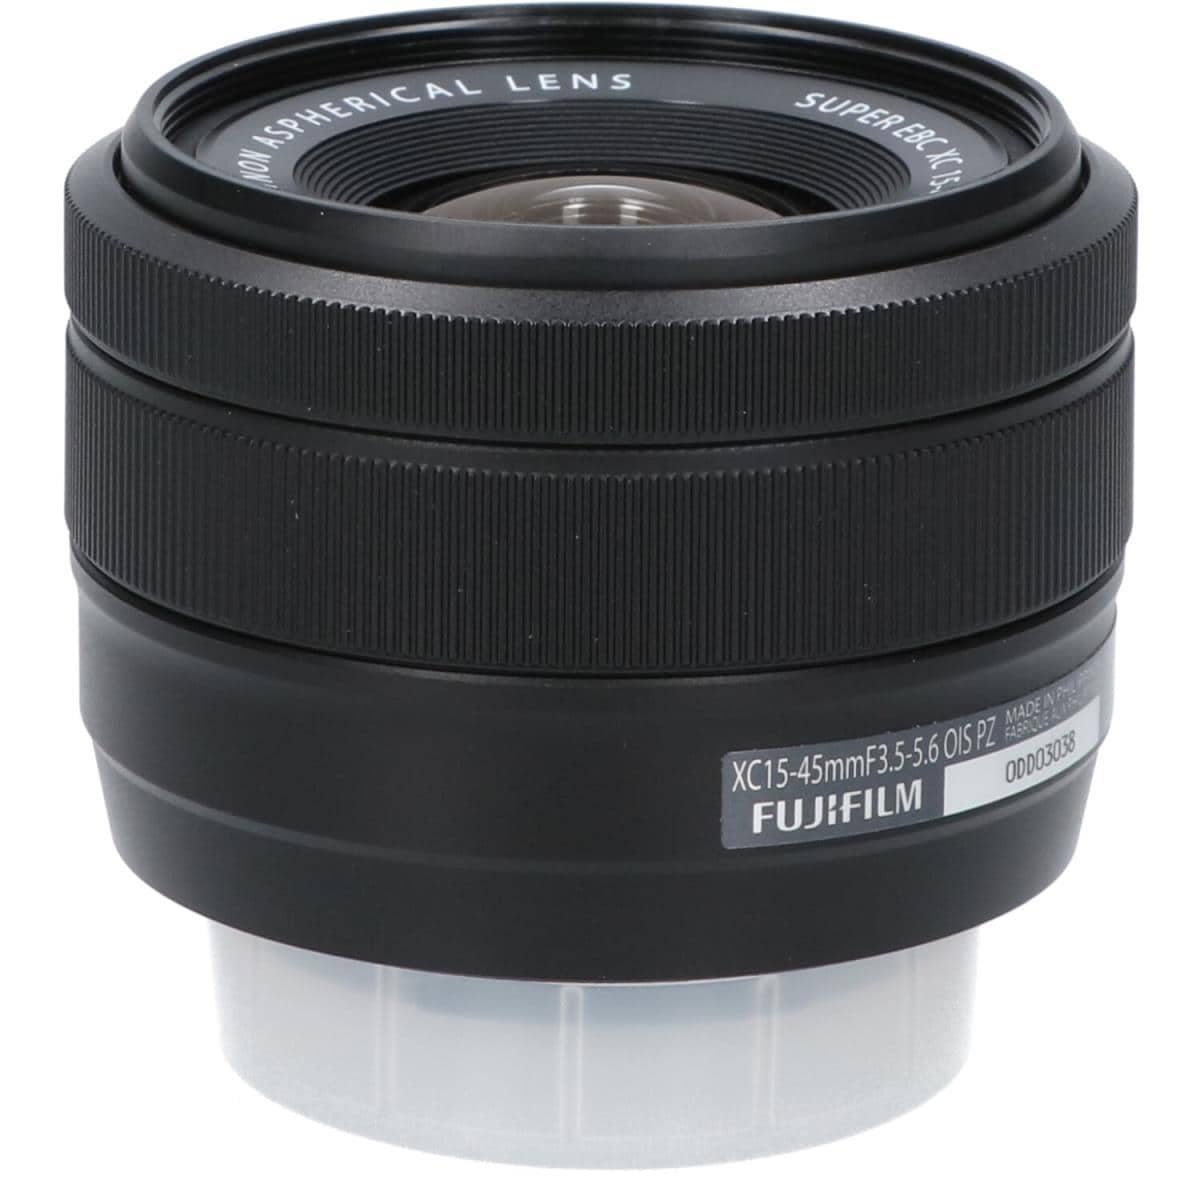 【平和維持】新品 FUJIFILM XC15-45mm F3.5-5.6 OIS 保証付き レンズ(ズーム)